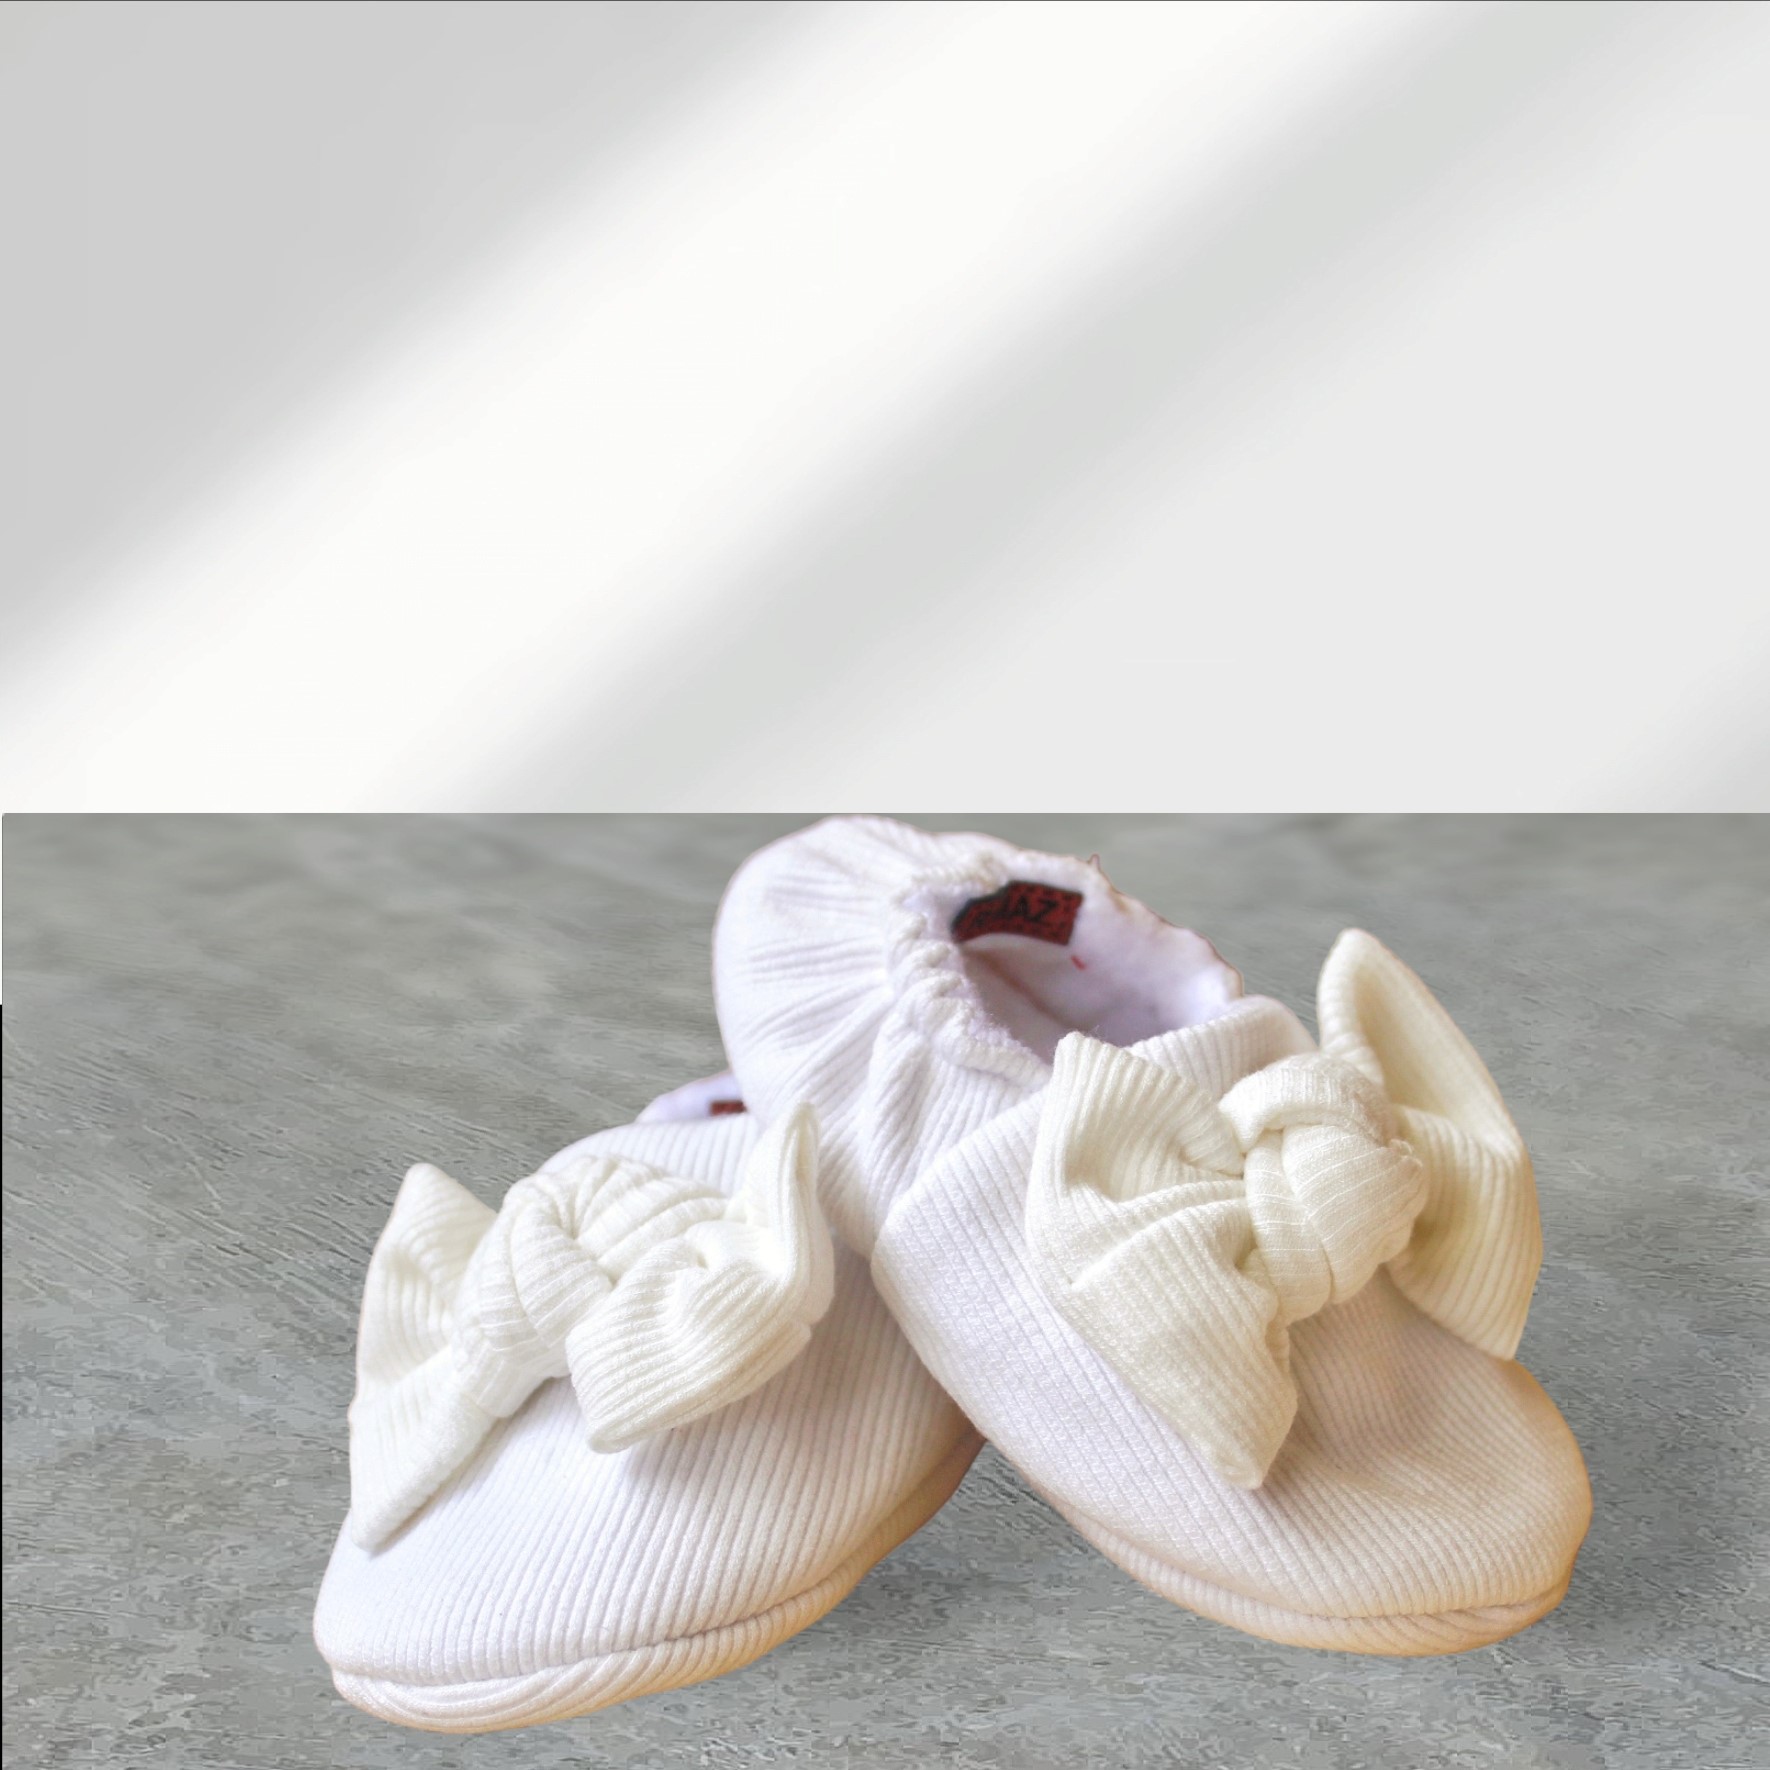 پاپوش نوزادی ریماز مدل پاپیونی سفید کد m904 -  - 4